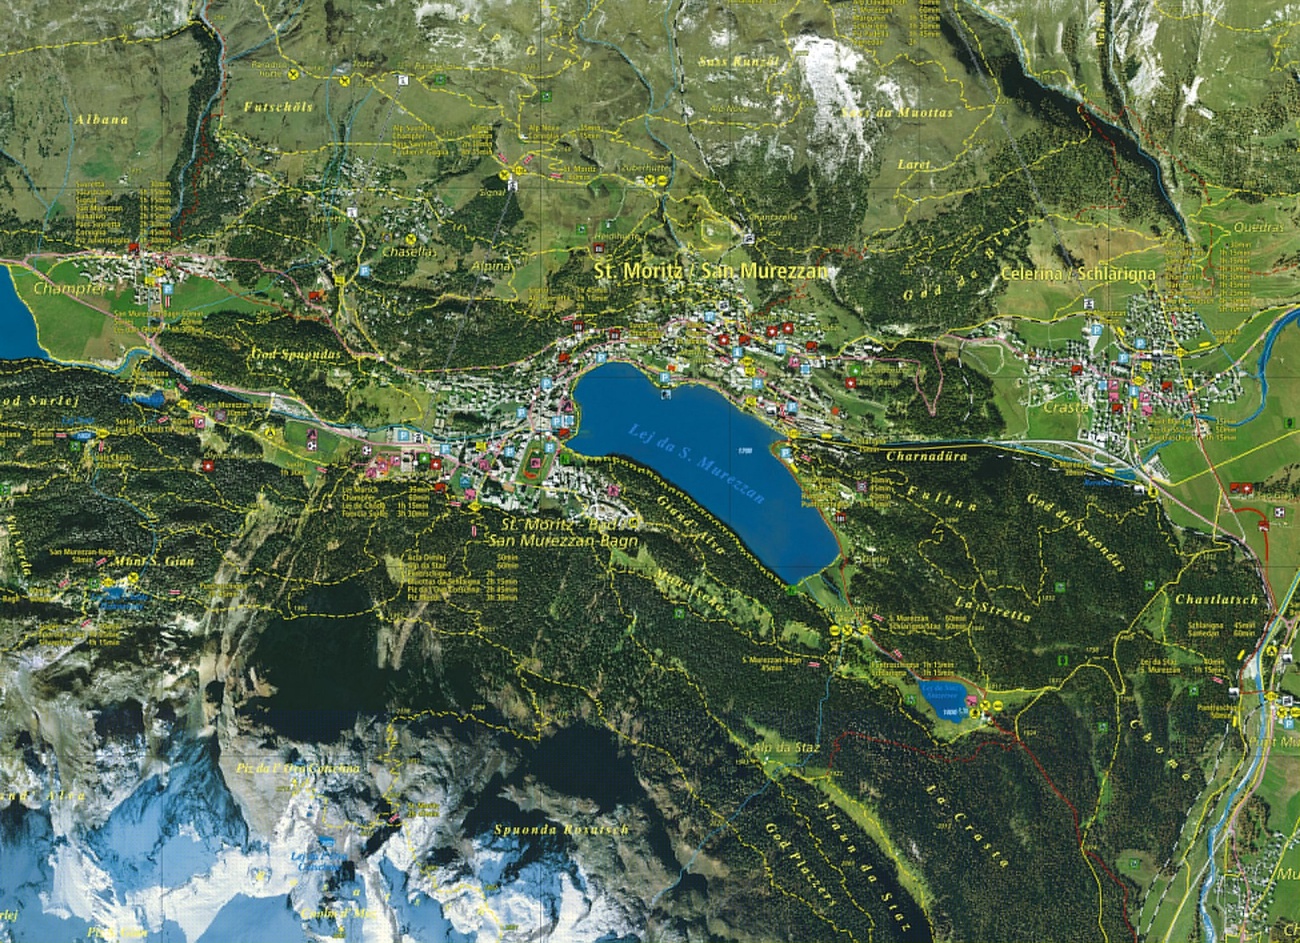 Mappa di St. Moritz di Endoxon, 2001